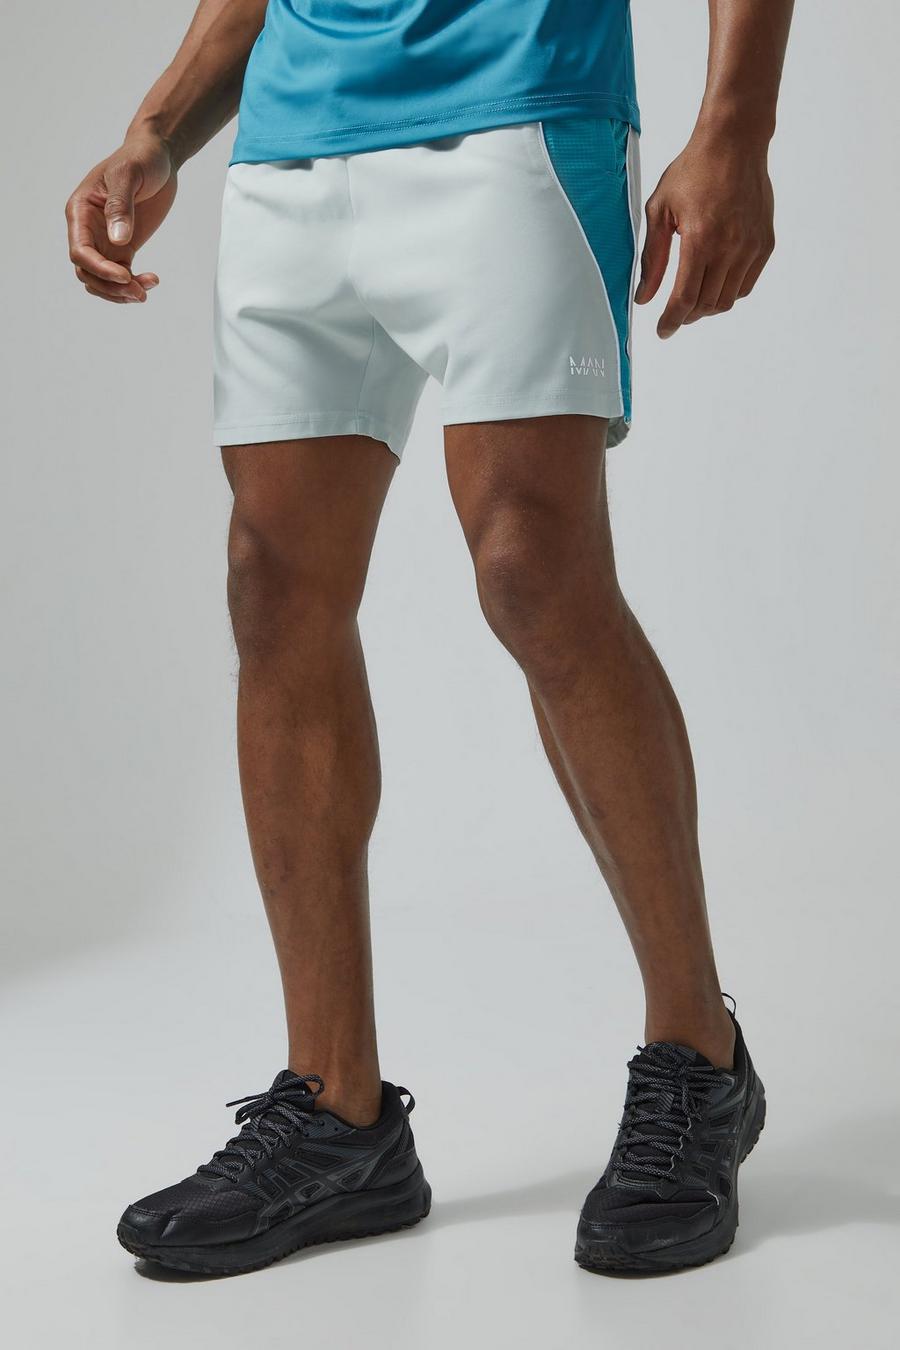 Pantaloncini Man Active a blocchi di colore in rete con trama in rilievo, Light grey